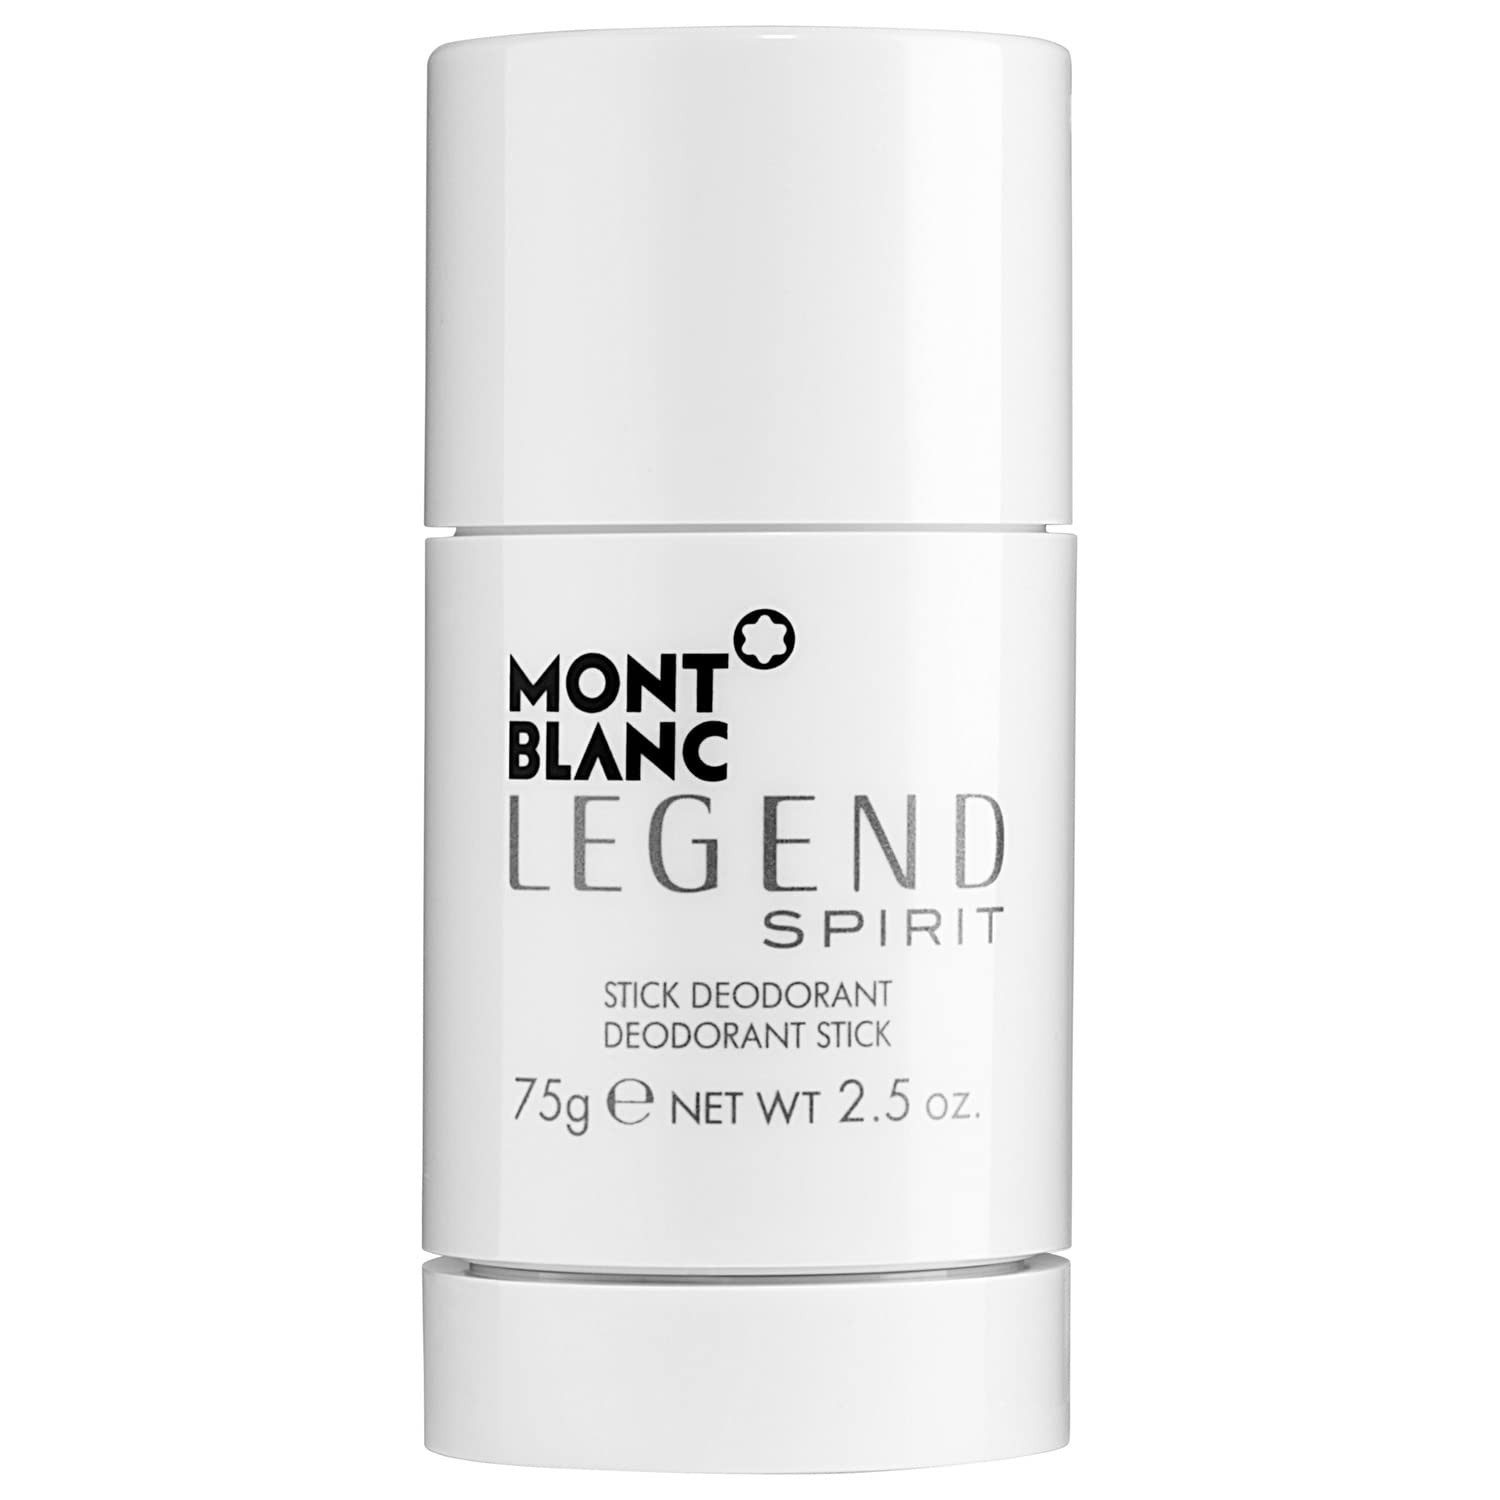 Legend Spirit – Déodorant Stick de MONTBLANC 75g